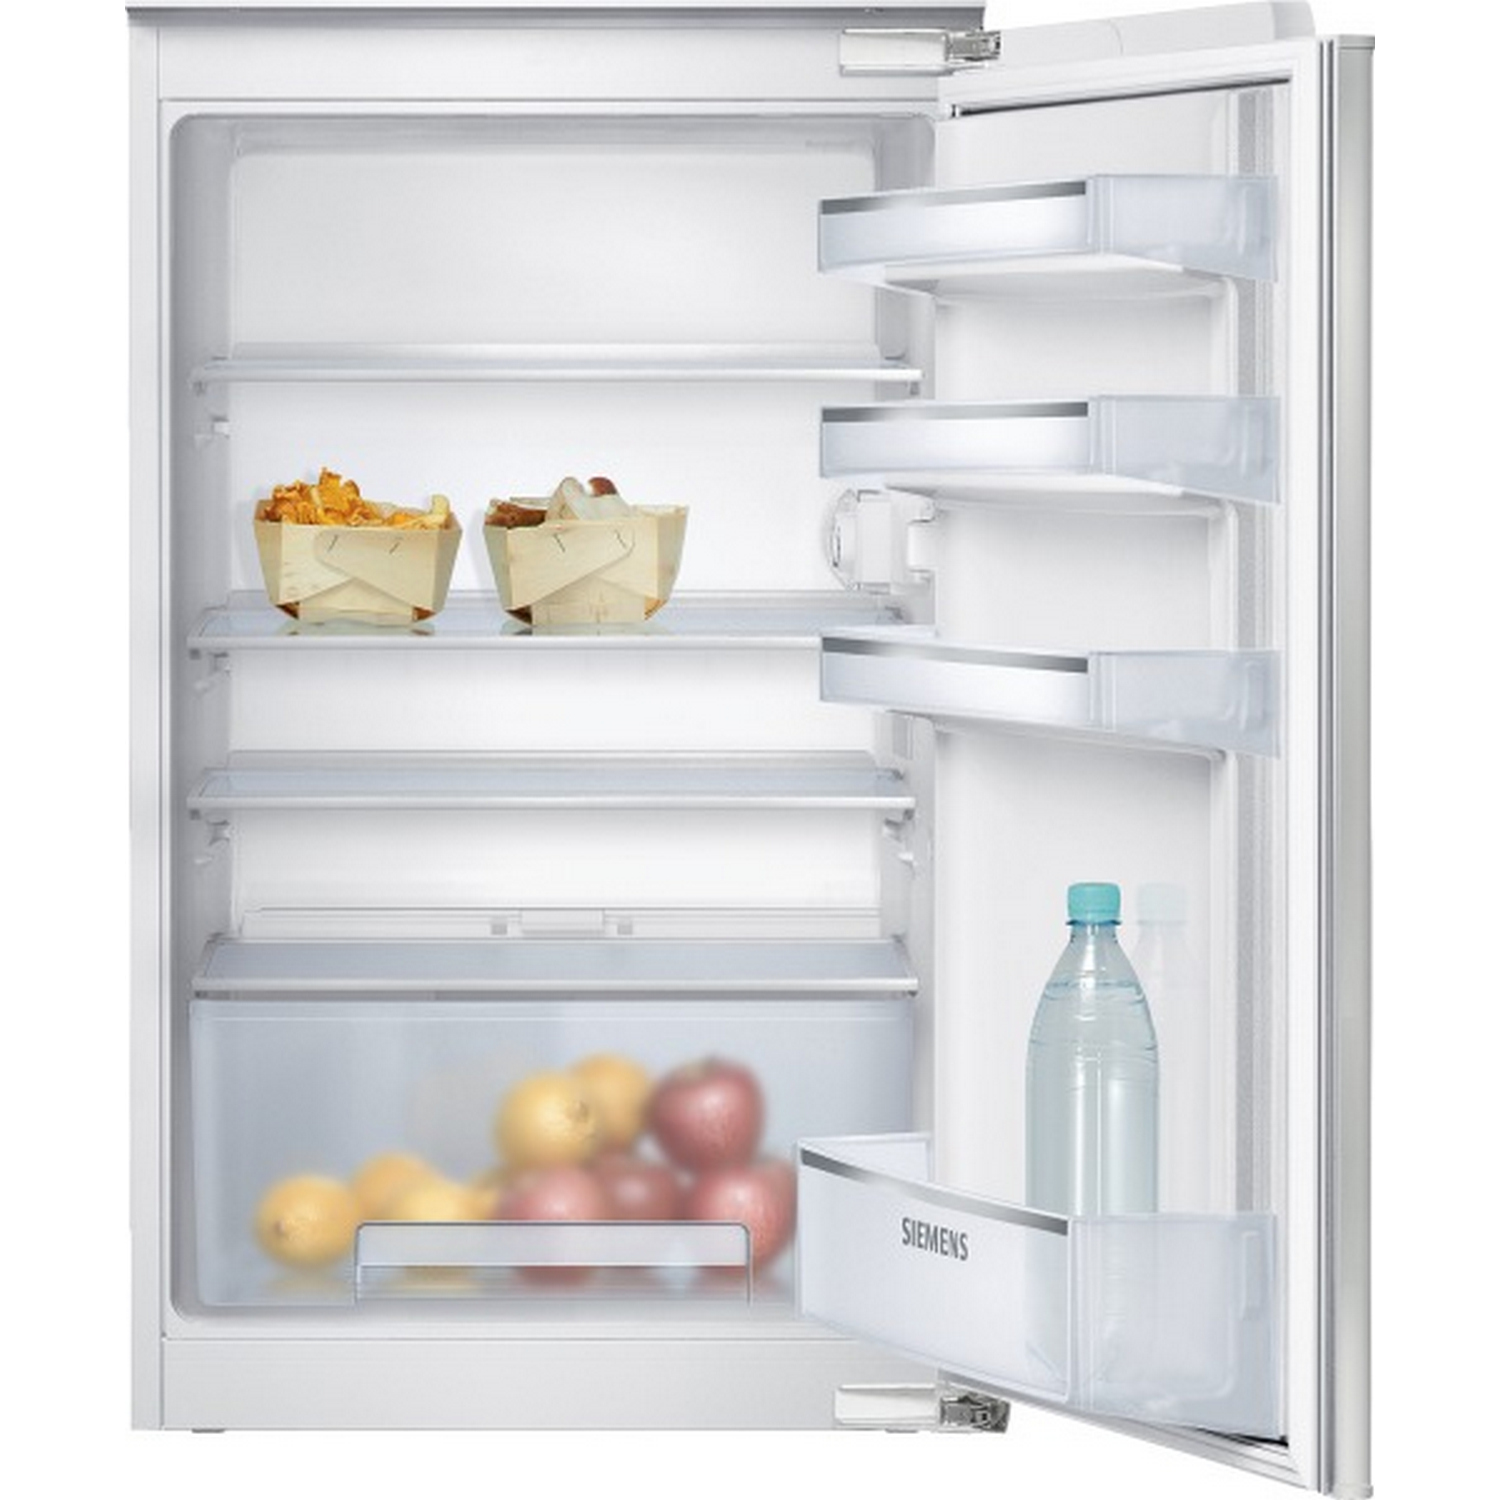 Siemens Einbaukühlschrank Mit Gefrierfach Kaufen 2020 ...